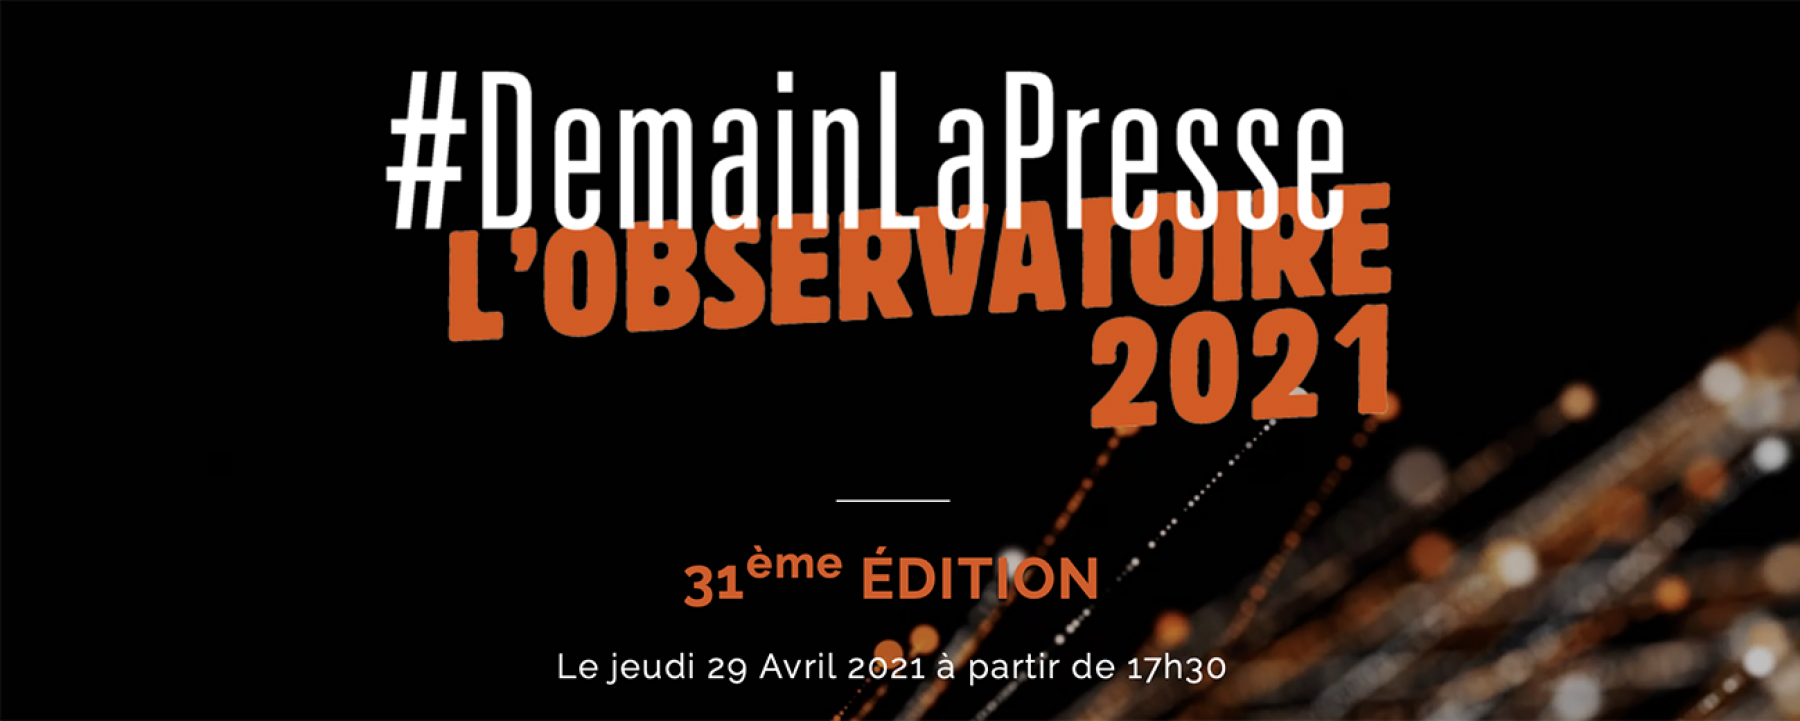 #DemainLaPresse, L'Observatoire 2021, organisé par l'ACPM le 29 avril 2021